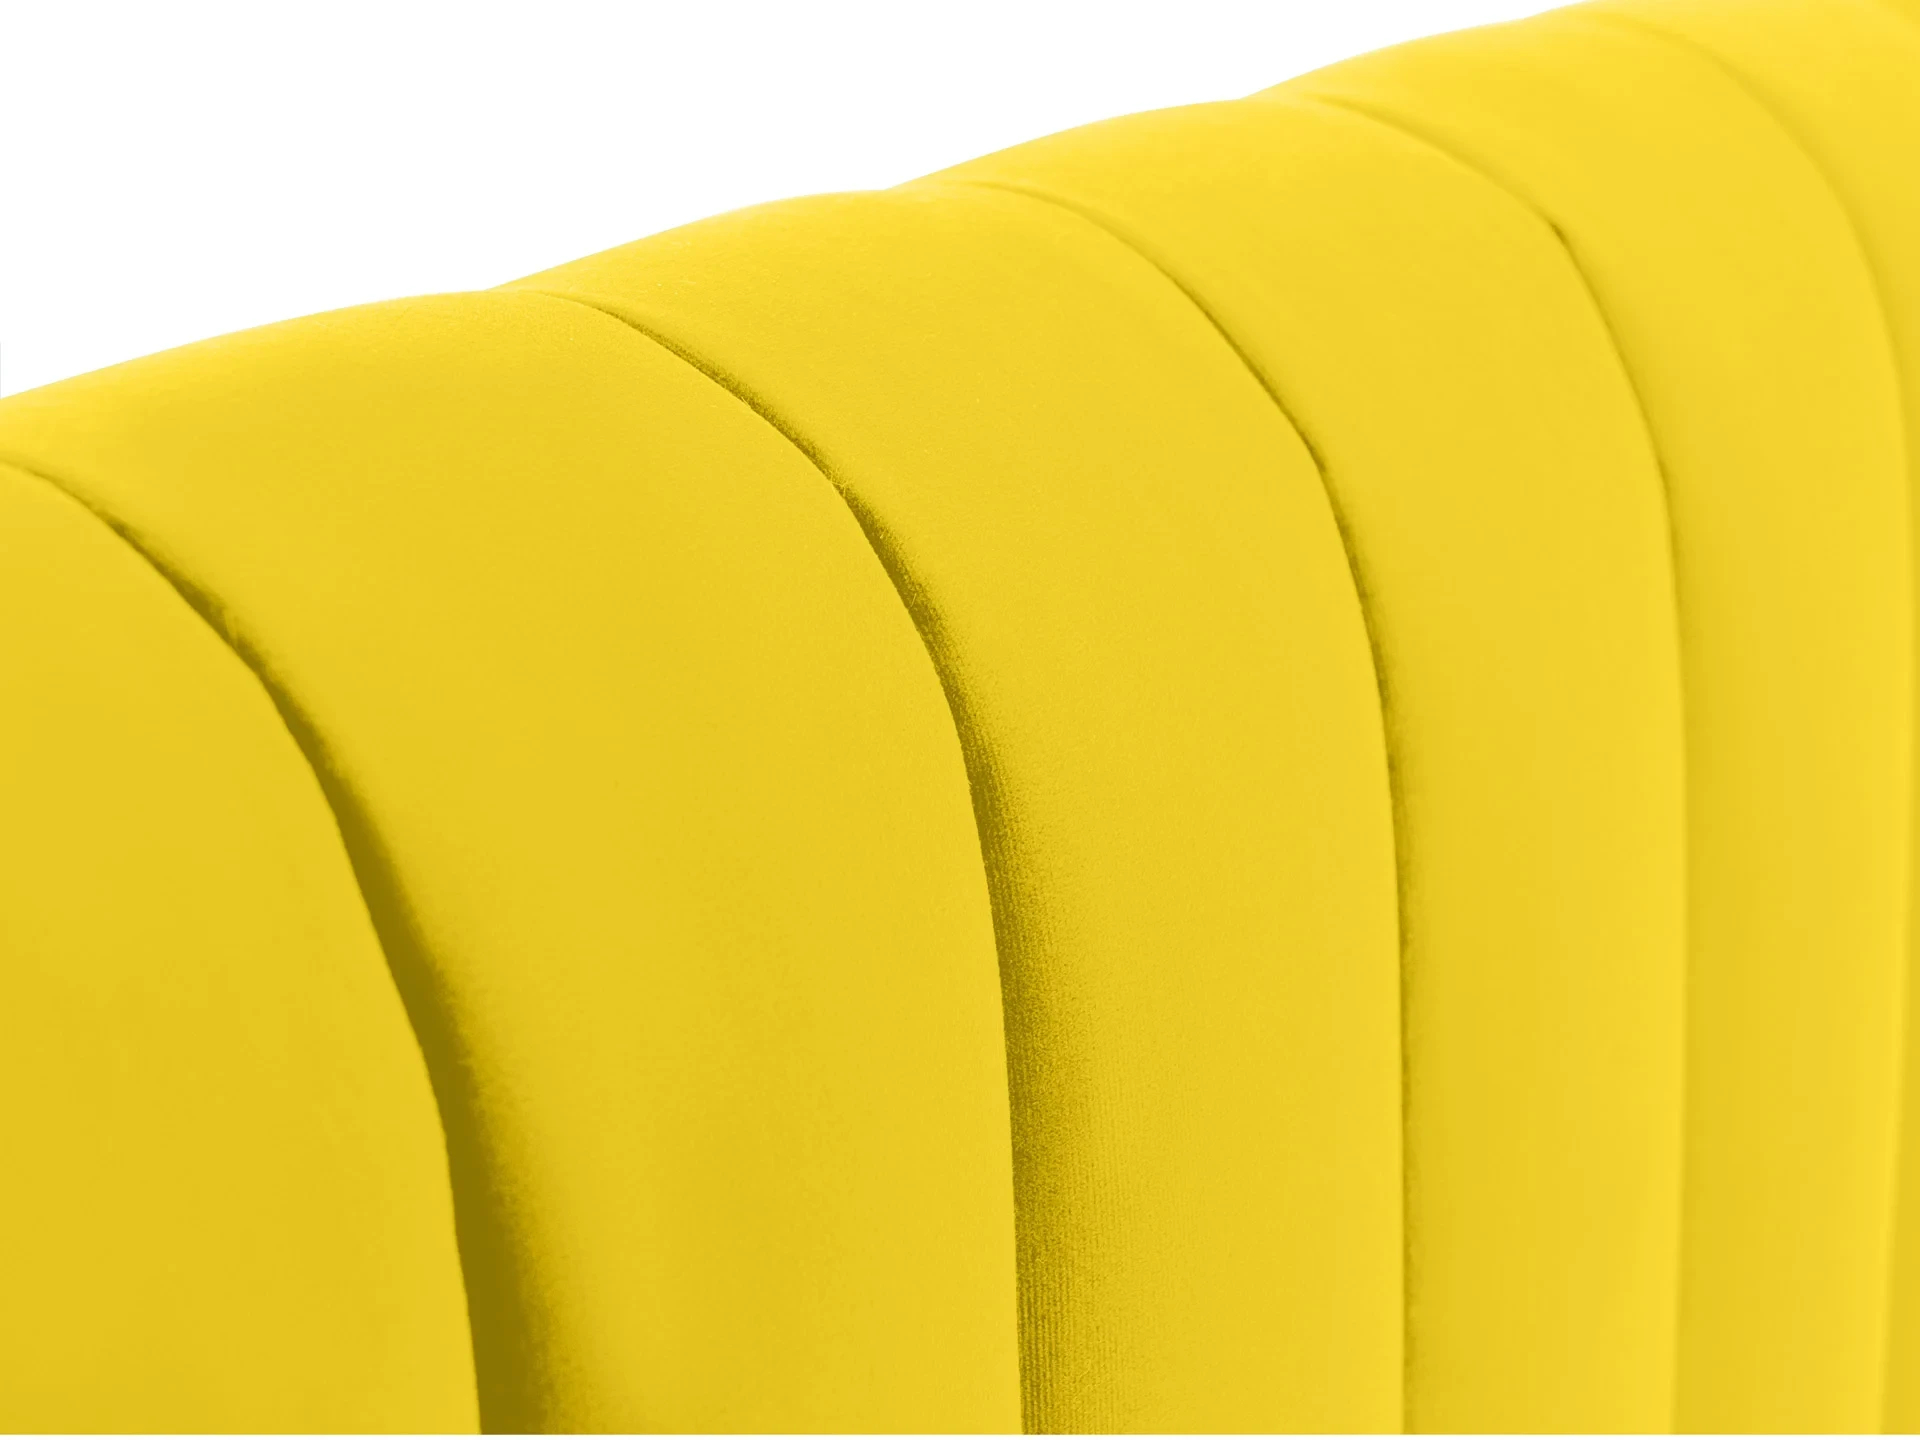 Кровать Dijon с мягким изголовьем 180х200 желтый 652383